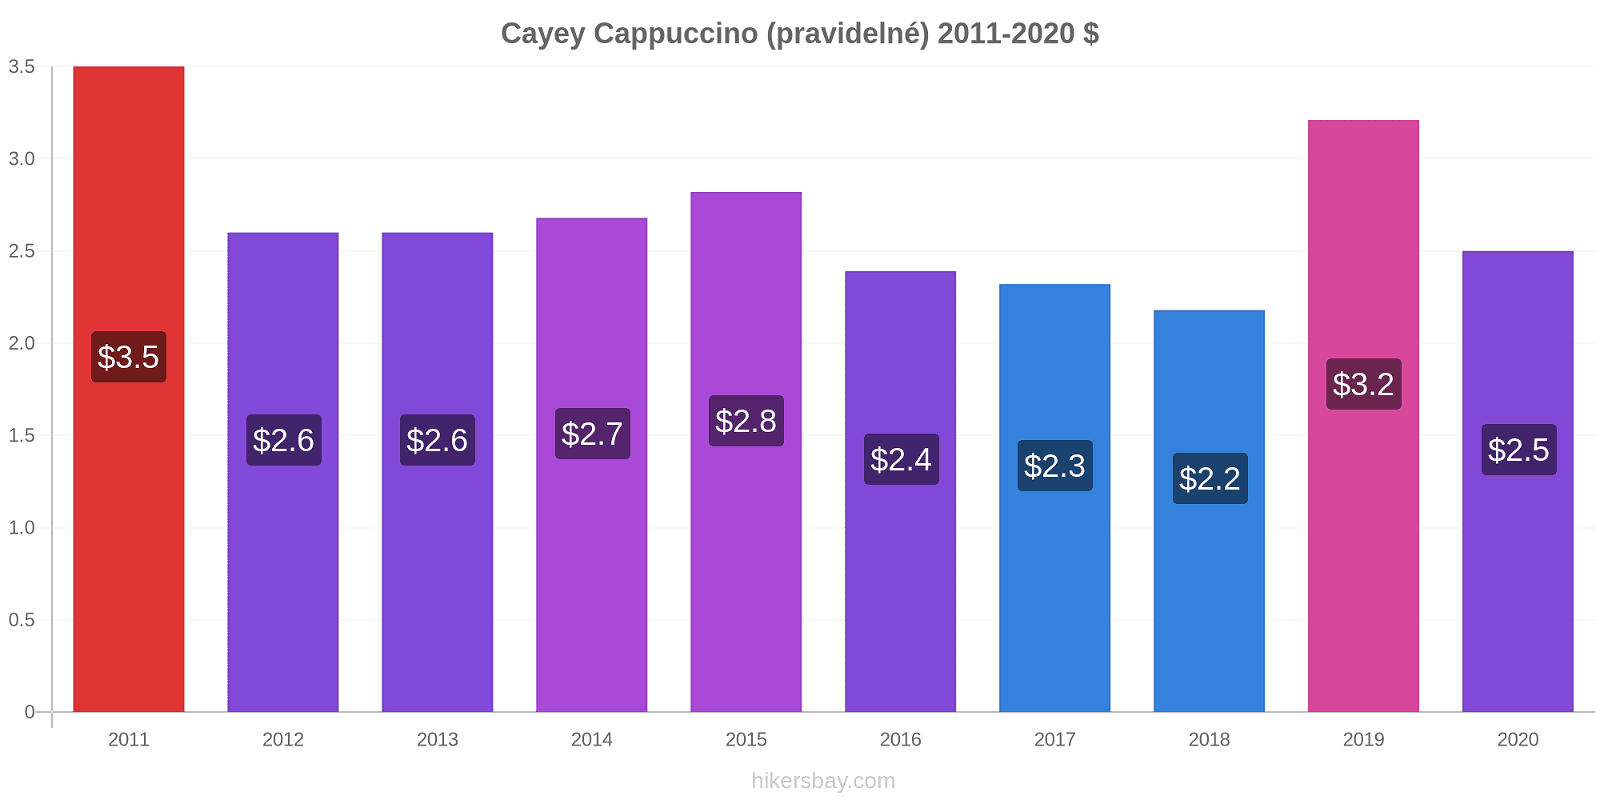 Cayey změny cen Cappuccino (pravidelné) hikersbay.com